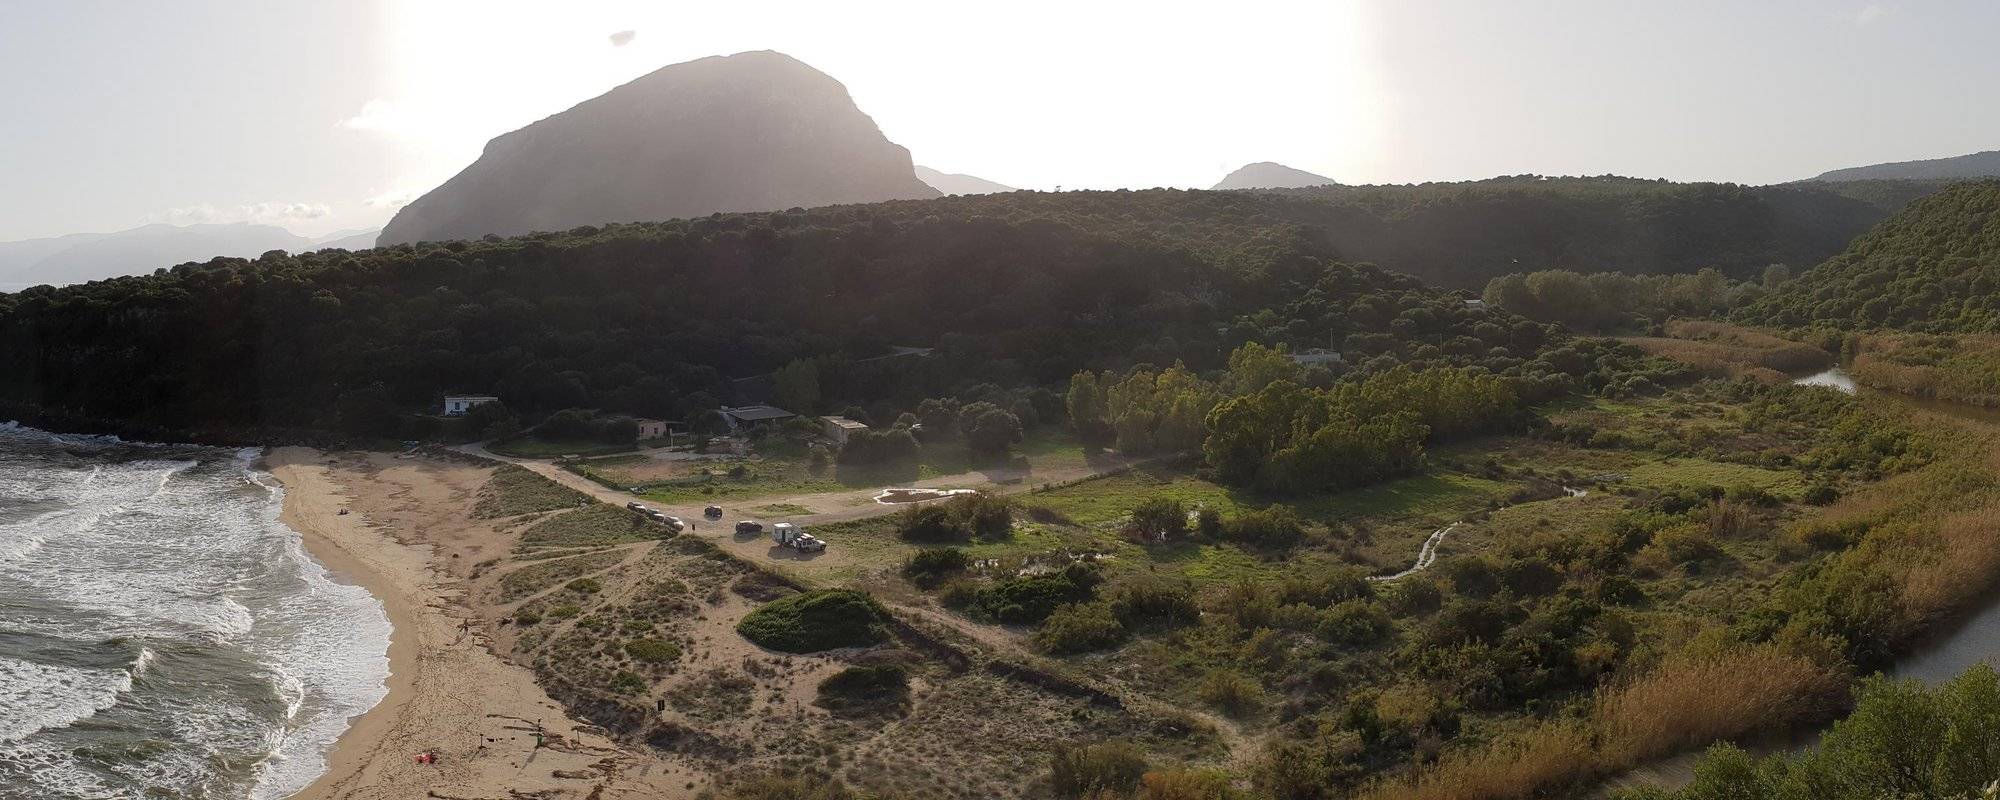 Sardinien - Übernachtung in Cala Osalla -/ Sardinia  Camping in Cala Osalla